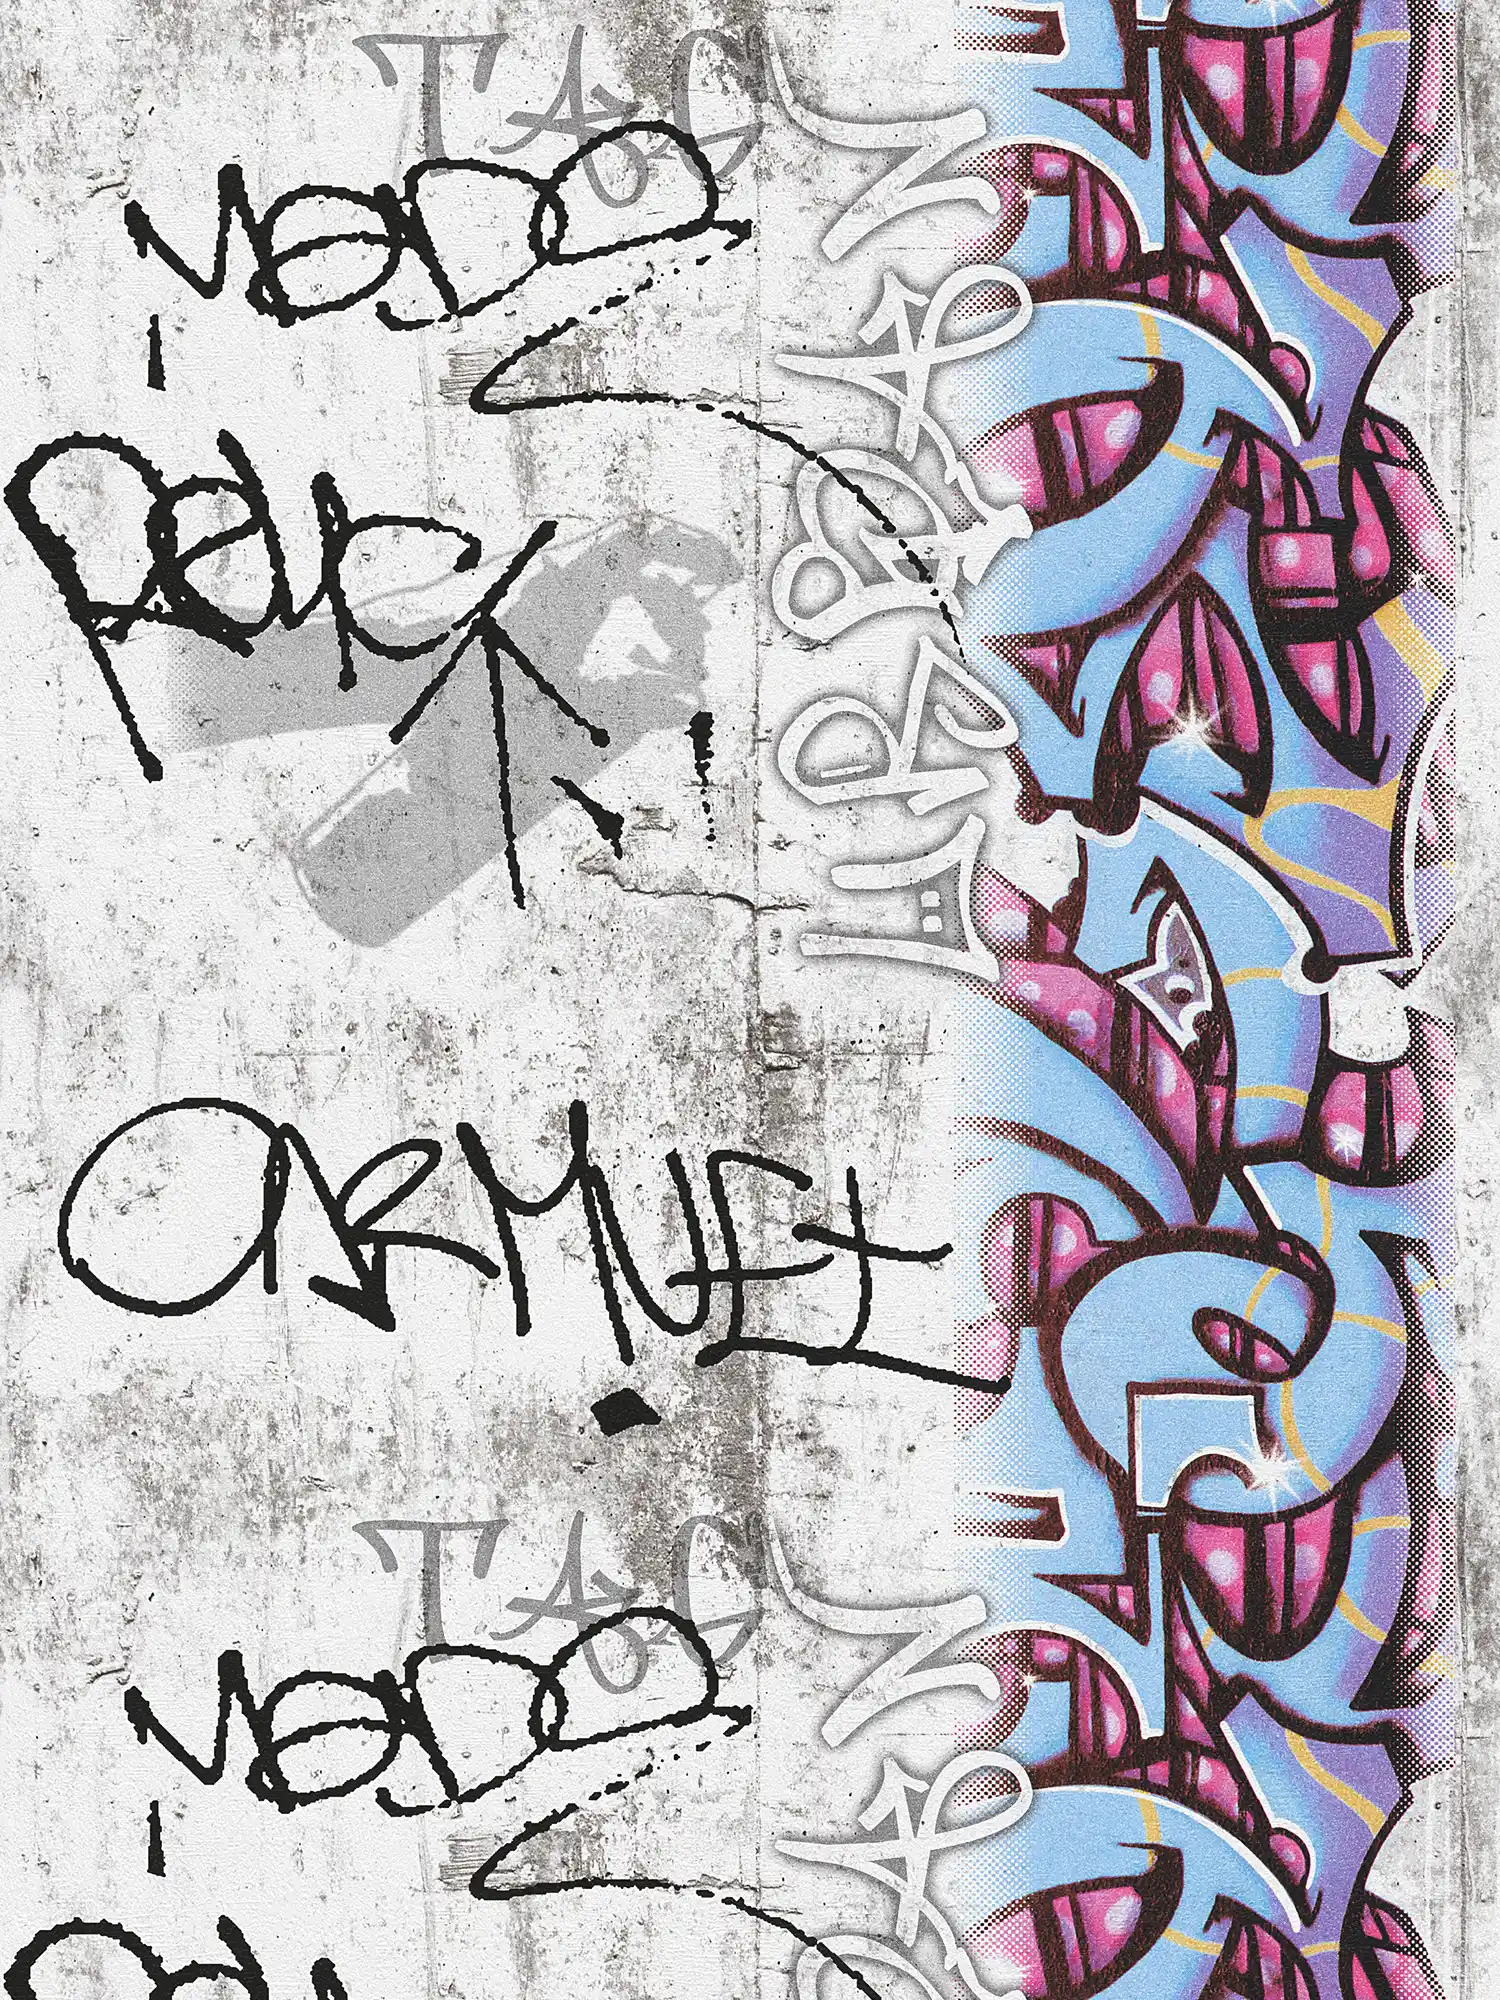 Papier peint graffiti imitation béton & graphisme - gris, bleu
